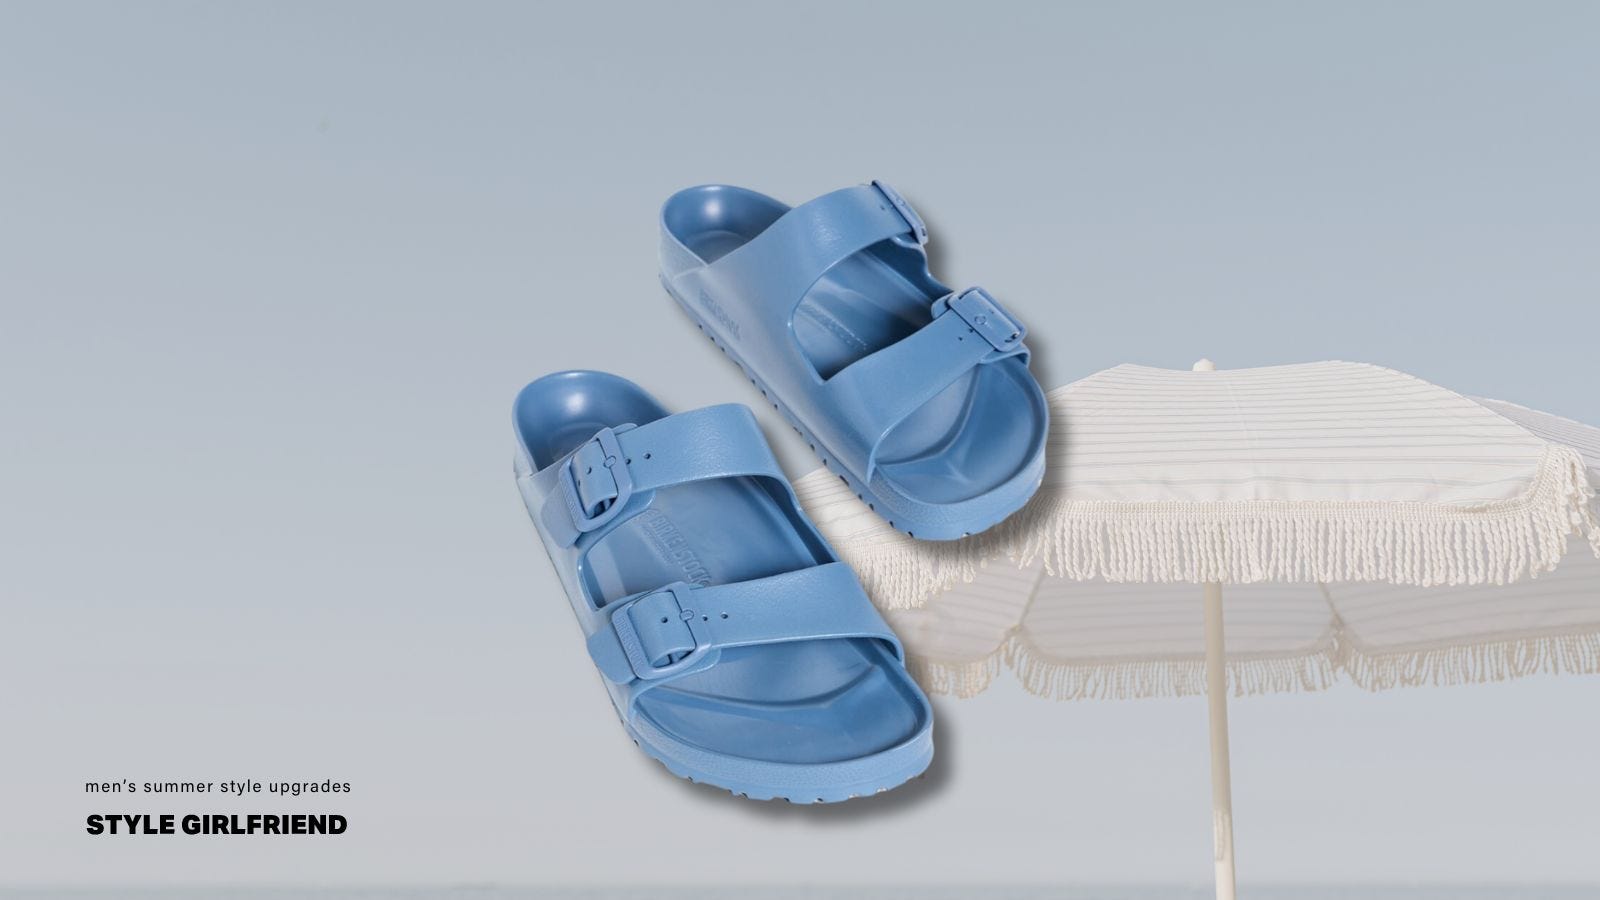 Picture of blue Birkenstock sandals on blue sky background